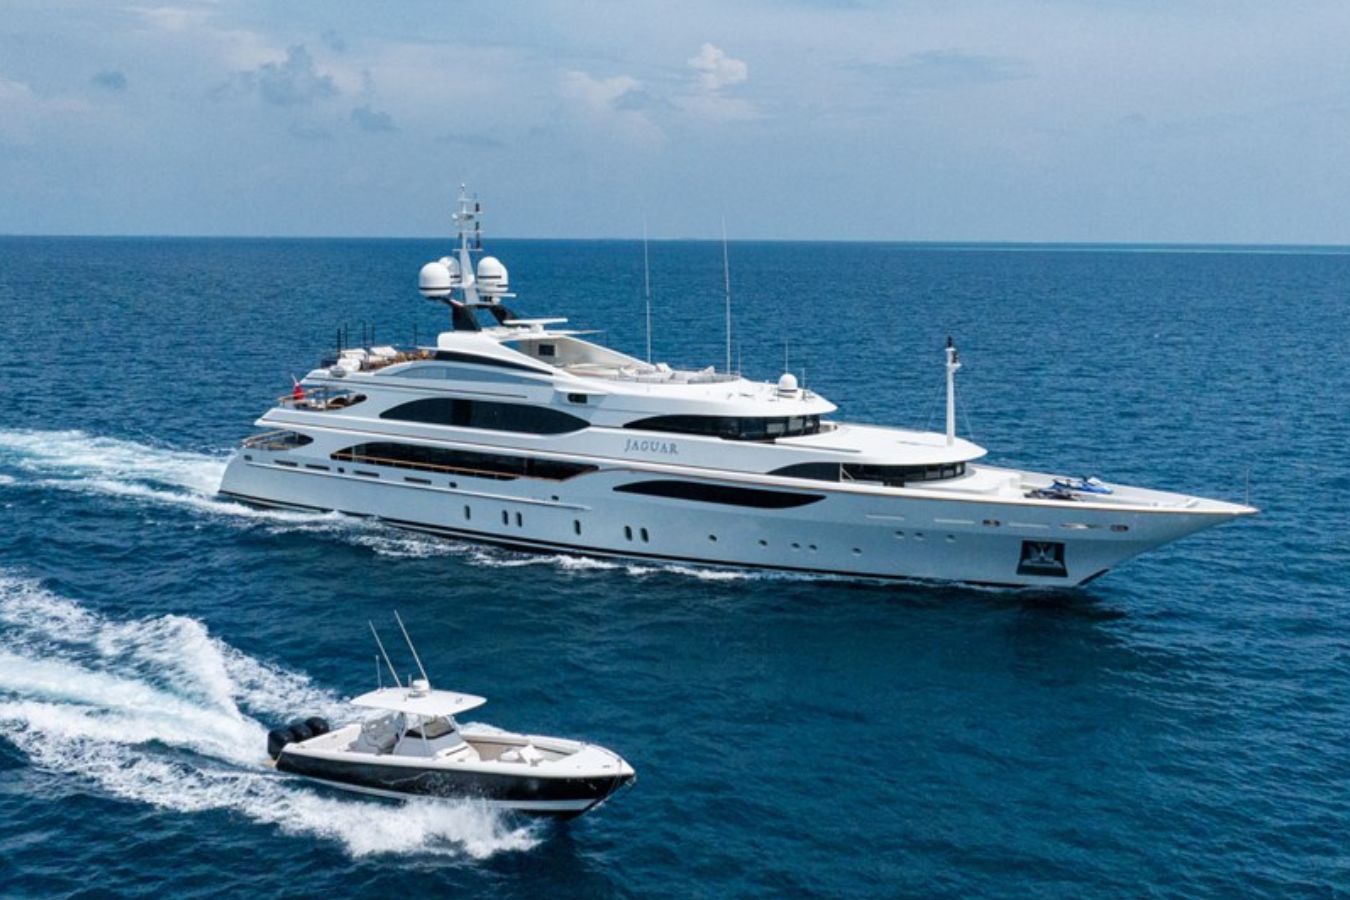 Buy Luxury JAGUAR Yacht